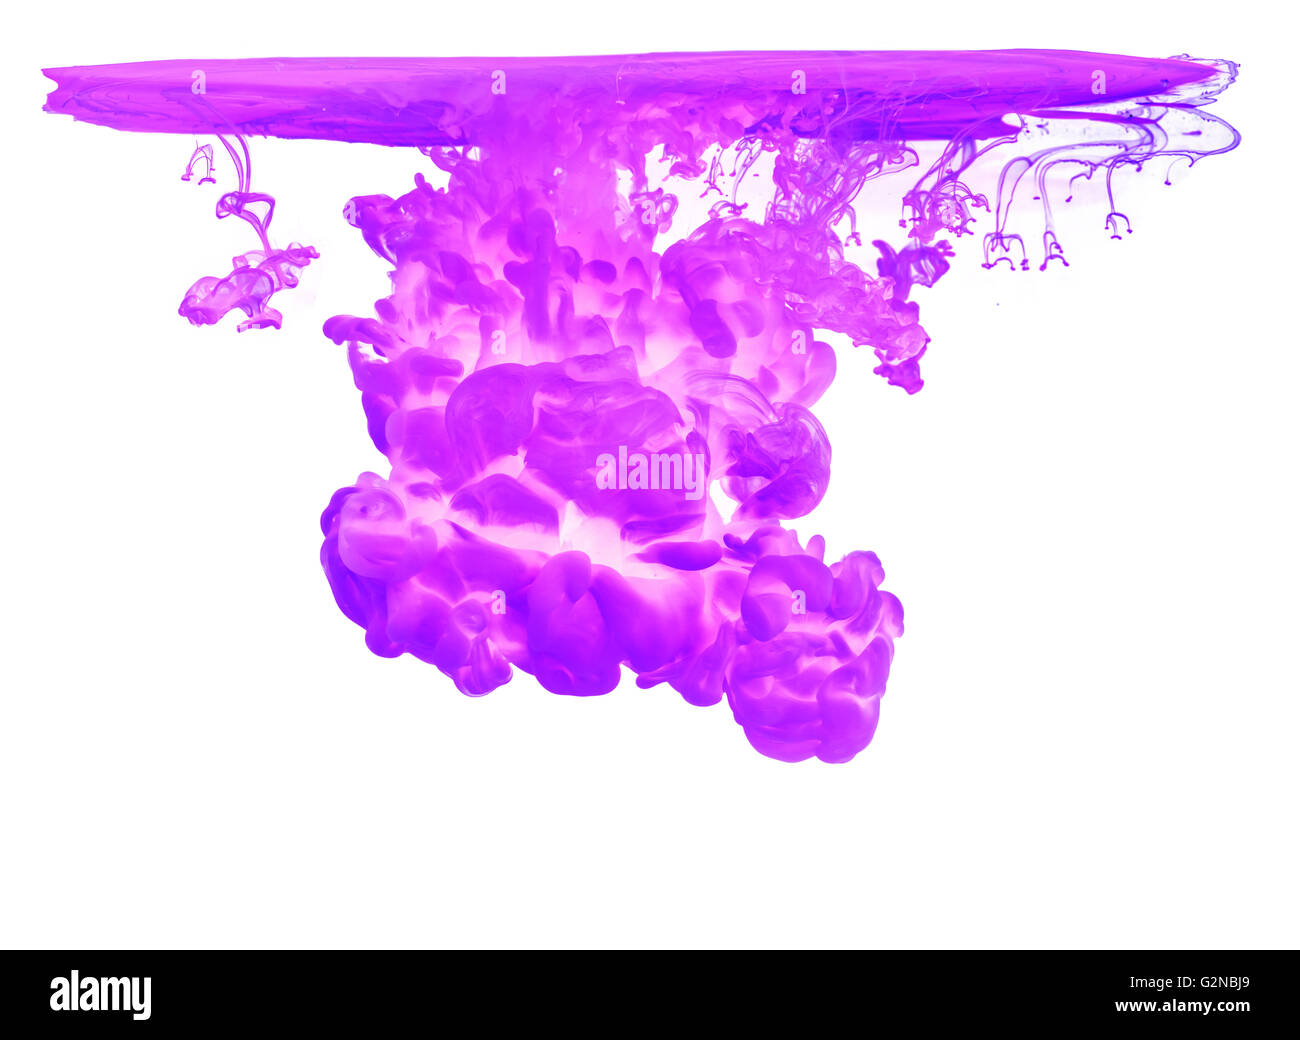 Violette Tinte im Wasser, die abstrakte Form, isoliert auf weißem Hintergrund erstellen Stockfoto